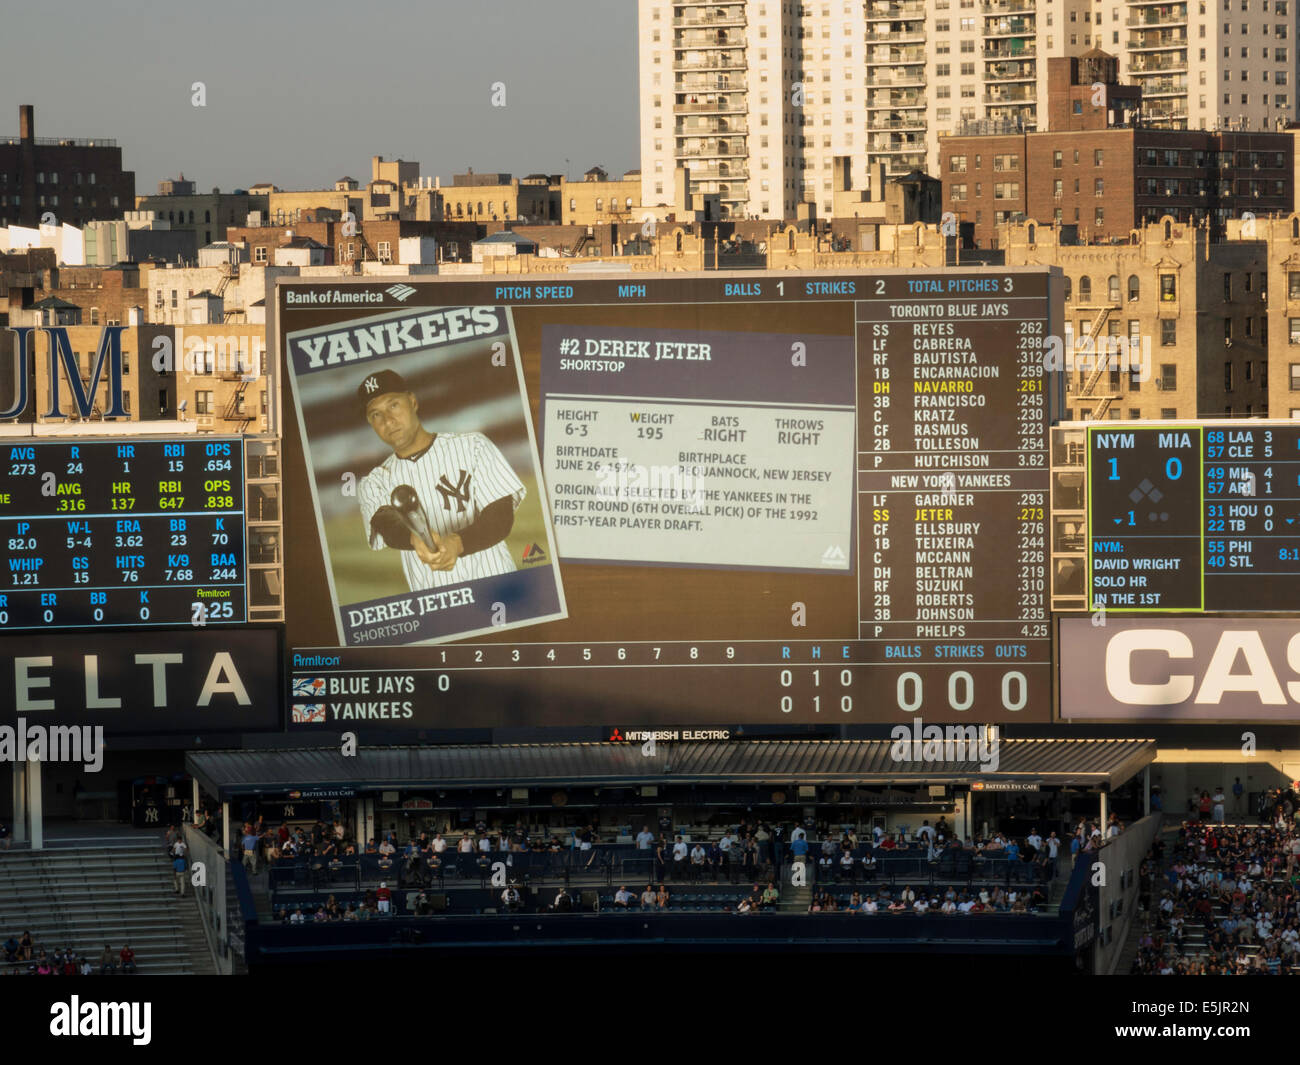 Yankee Stadium, Electronic Signage, The Bronx, New York Stock Photo